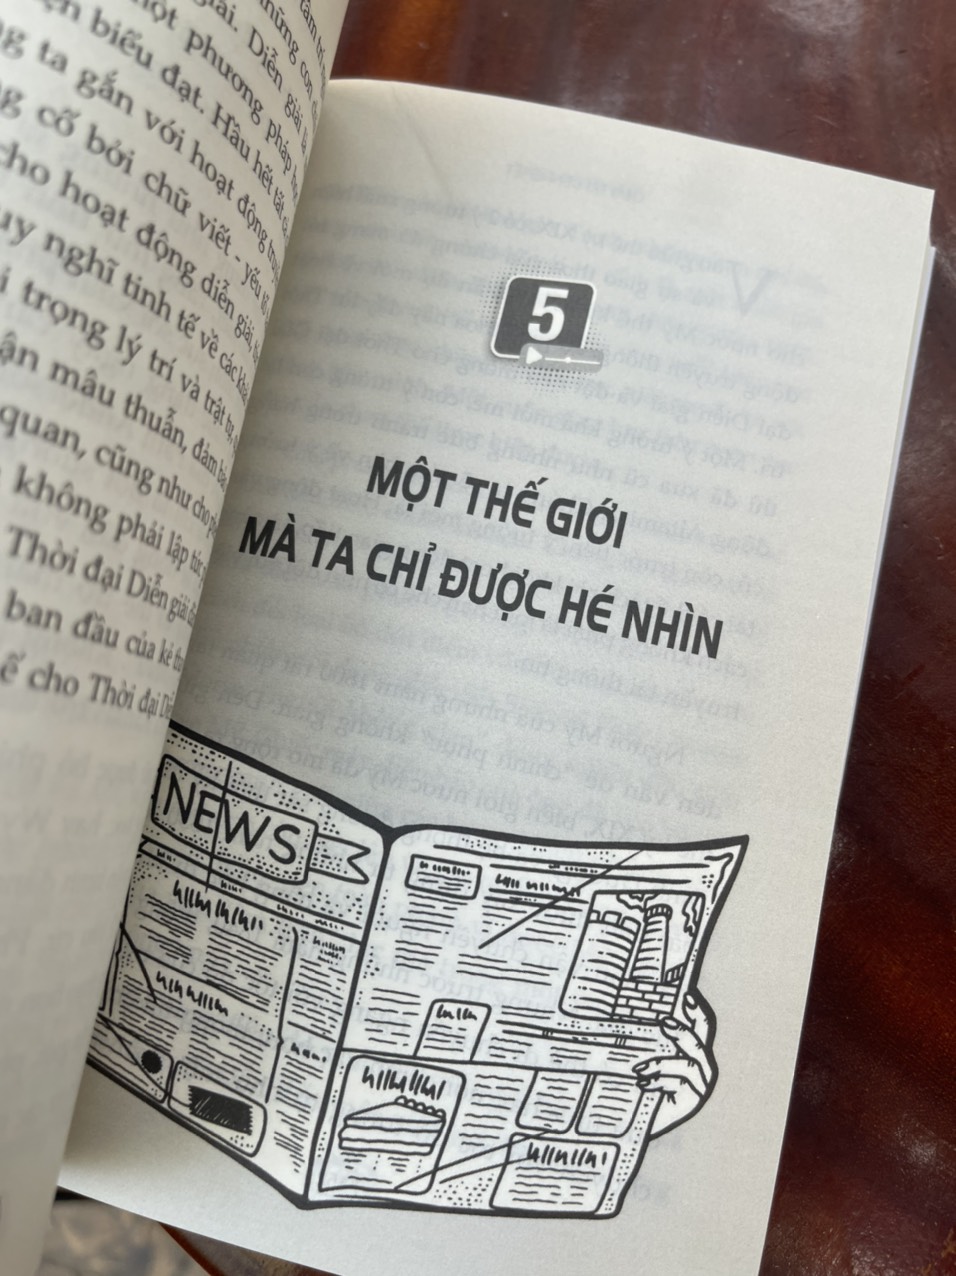 GIẢI TRÍ ĐẾN CHẾT- Tác phẩm kinh điển bán chạy nhất của bậc thầy Neil Postman  – Neil Postman – Nhung Nguyễn dịch – 1980 Books – NXB Thanh Niên